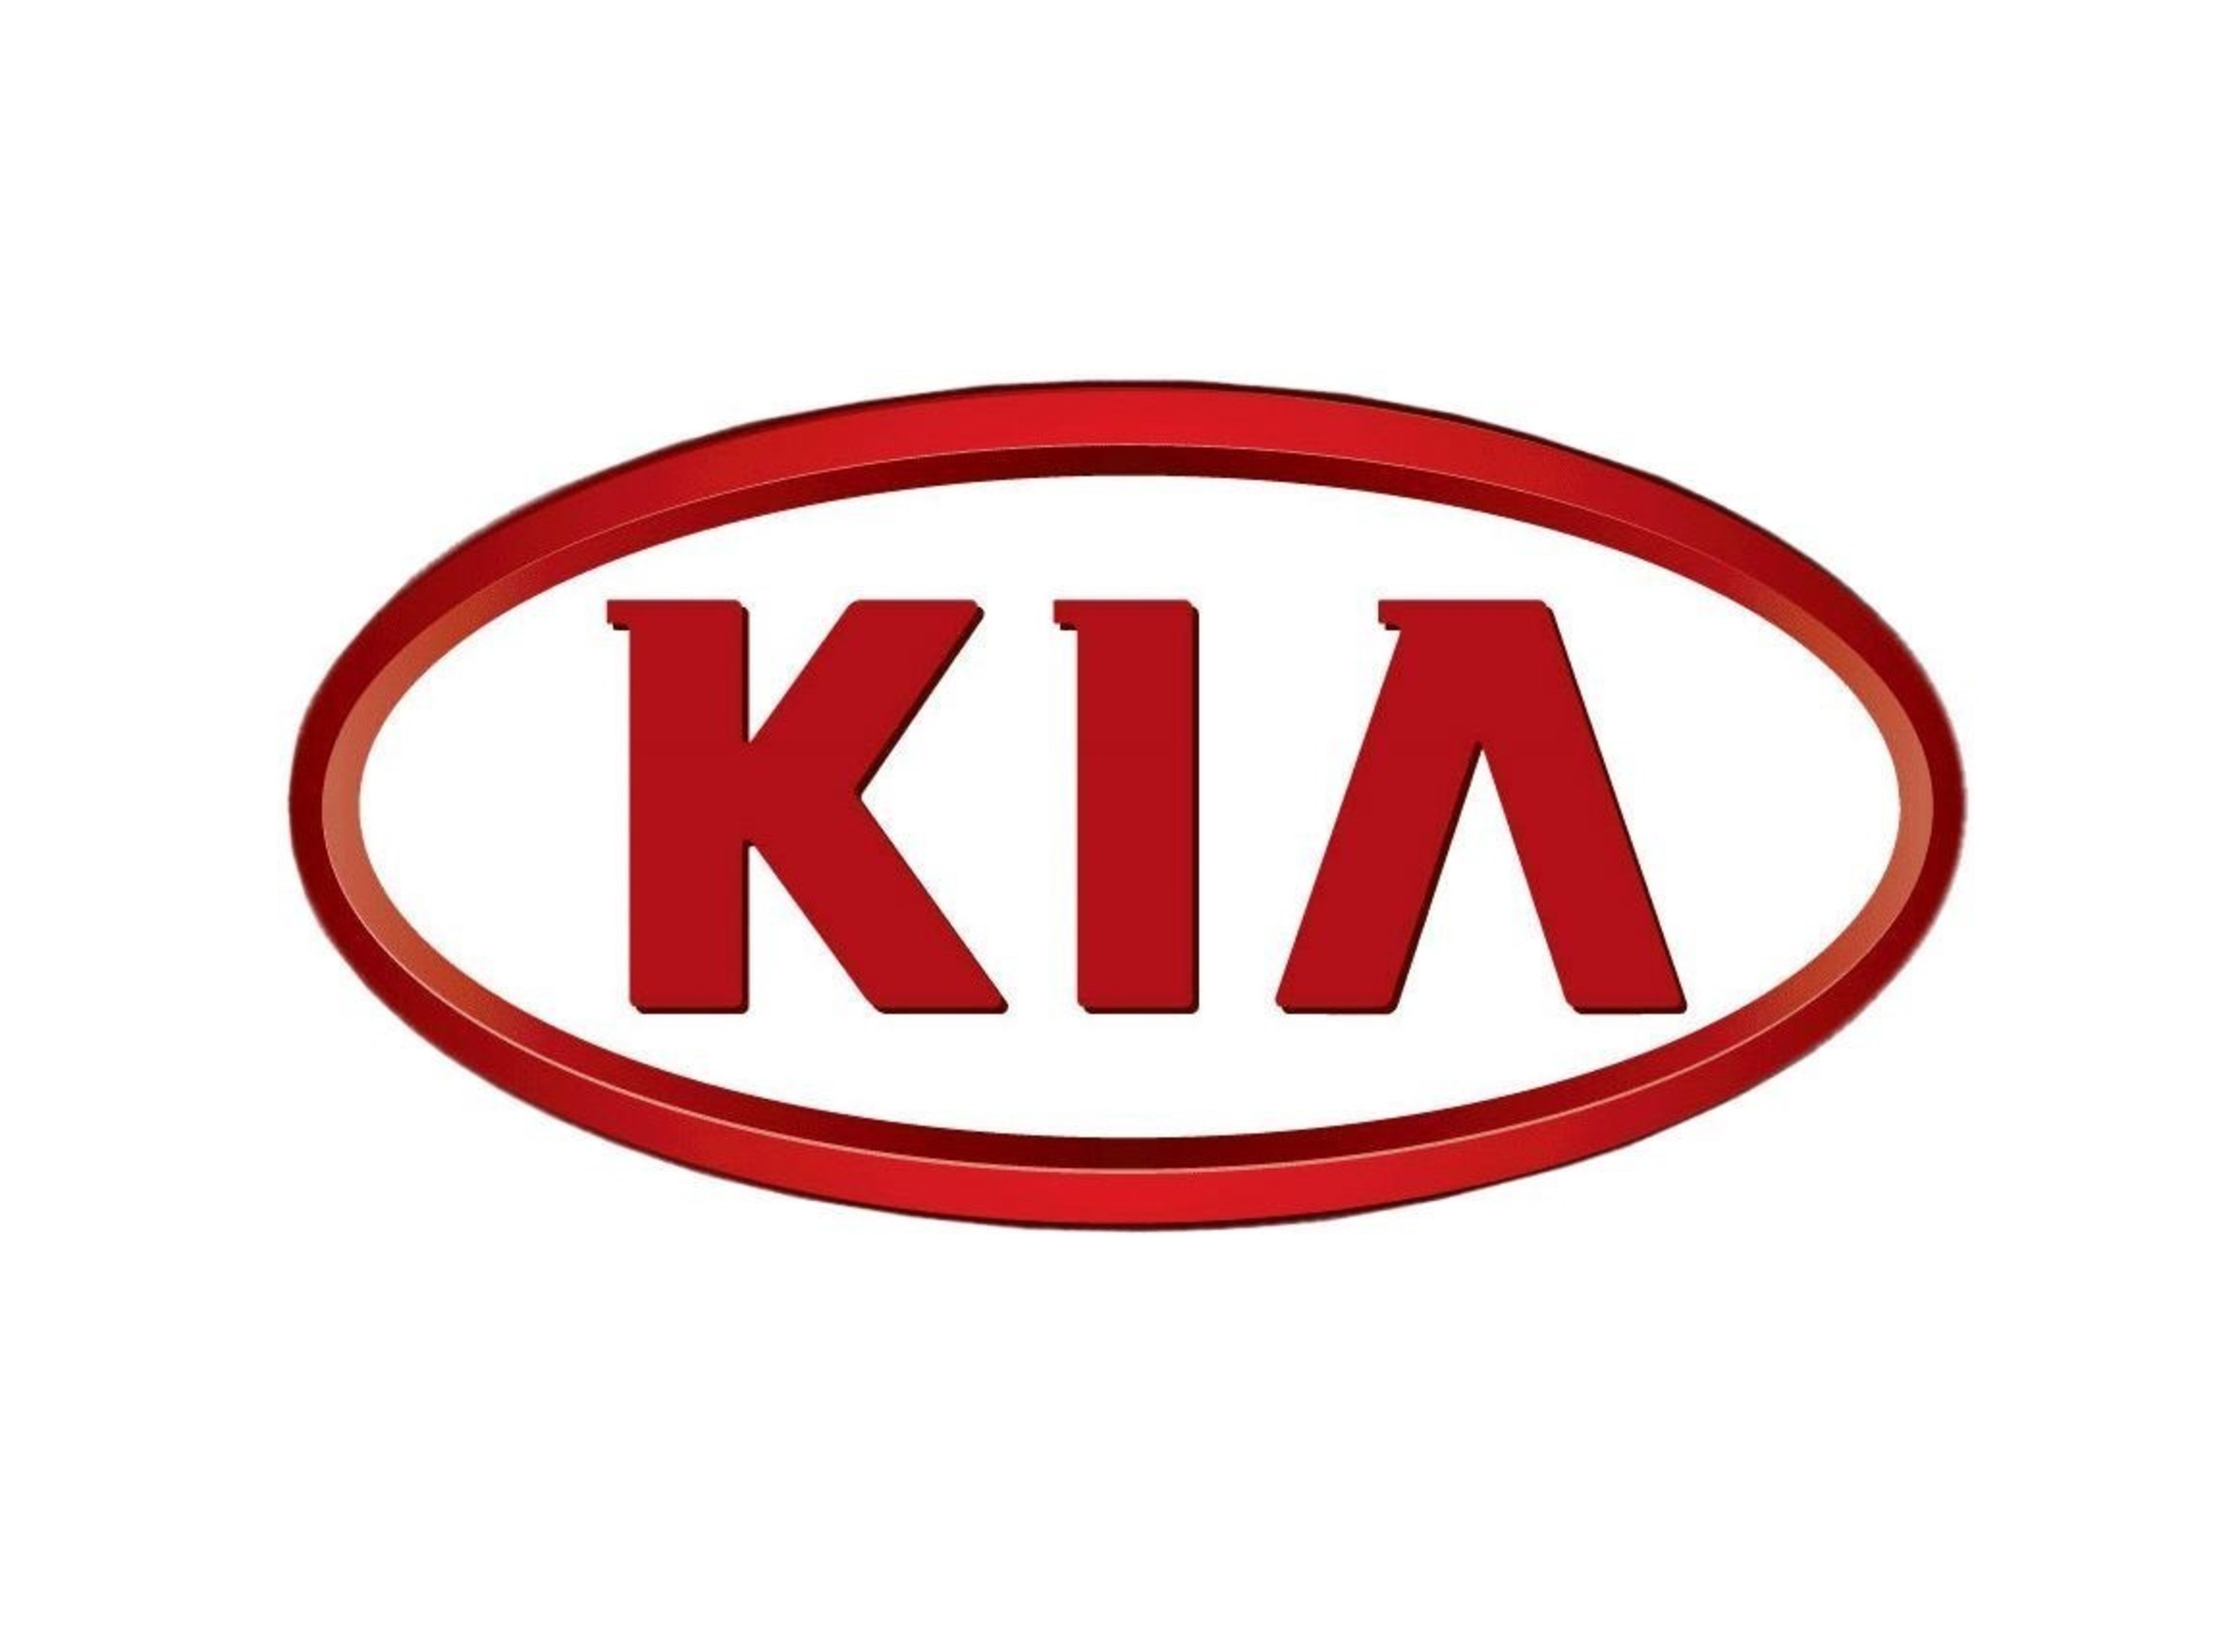 Kia (PRNewsFoto/Kia)